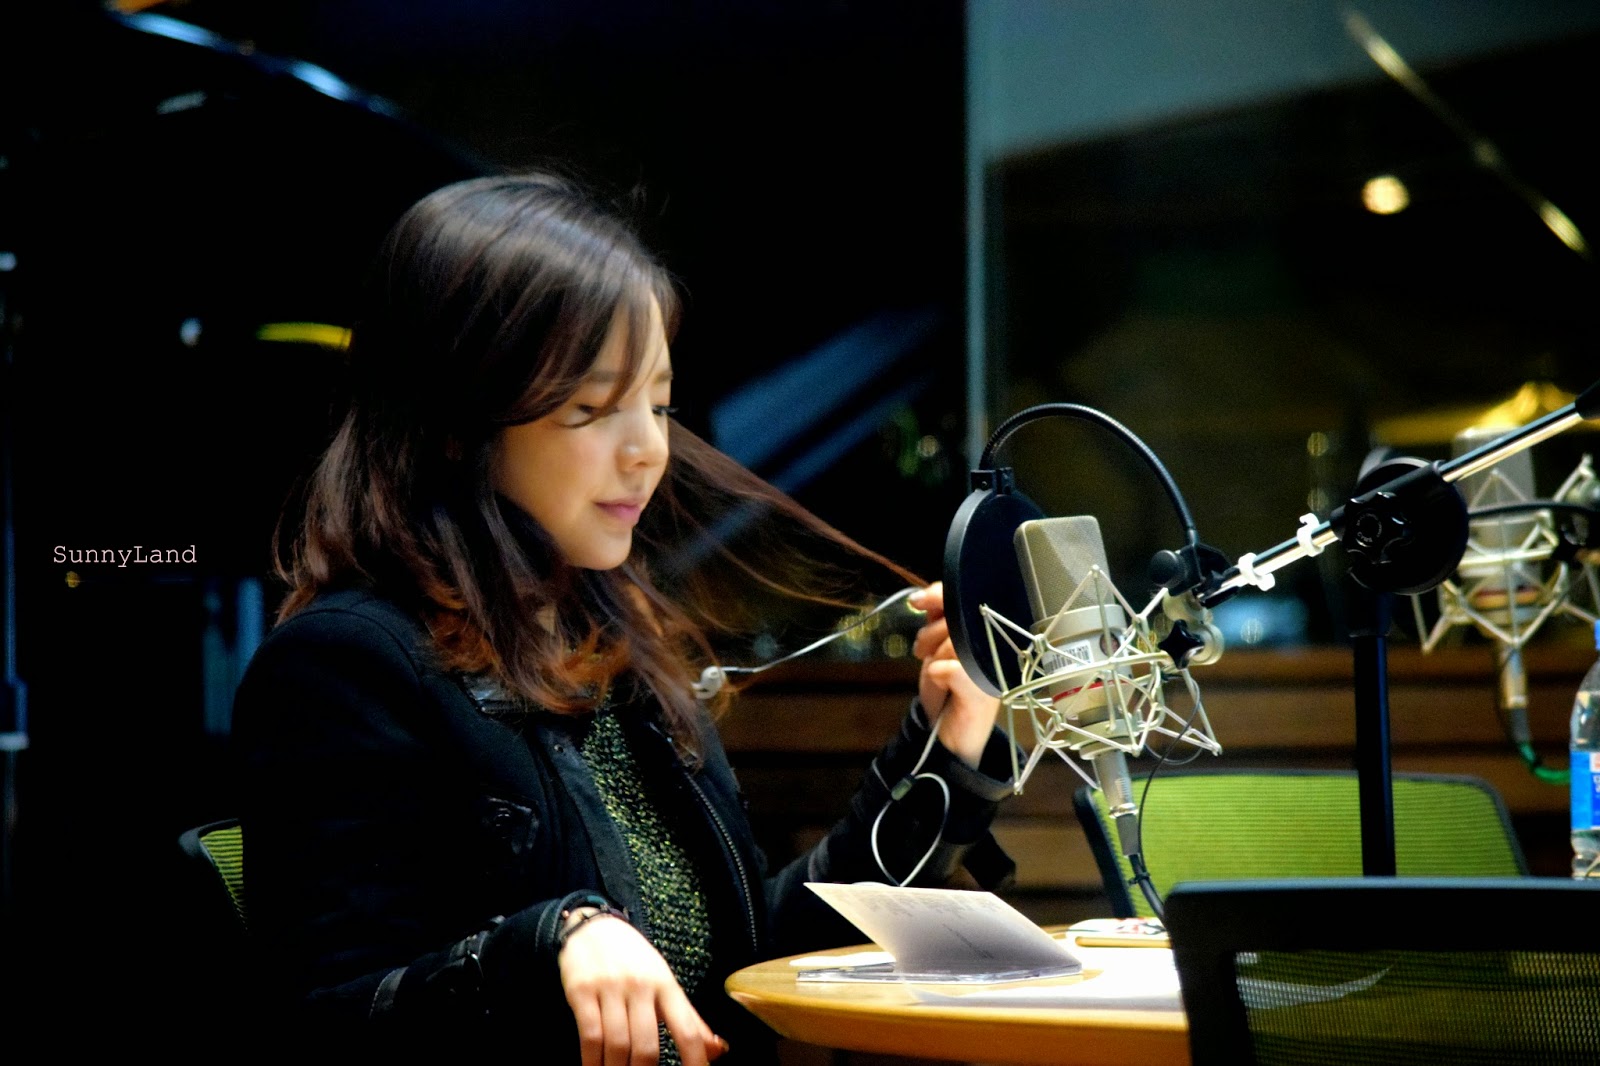 [OTHER][06-02-2015]Hình ảnh mới nhất từ DJ Sunny tại Radio MBC FM4U - "FM Date" - Page 10 DSC_0487_Fotor